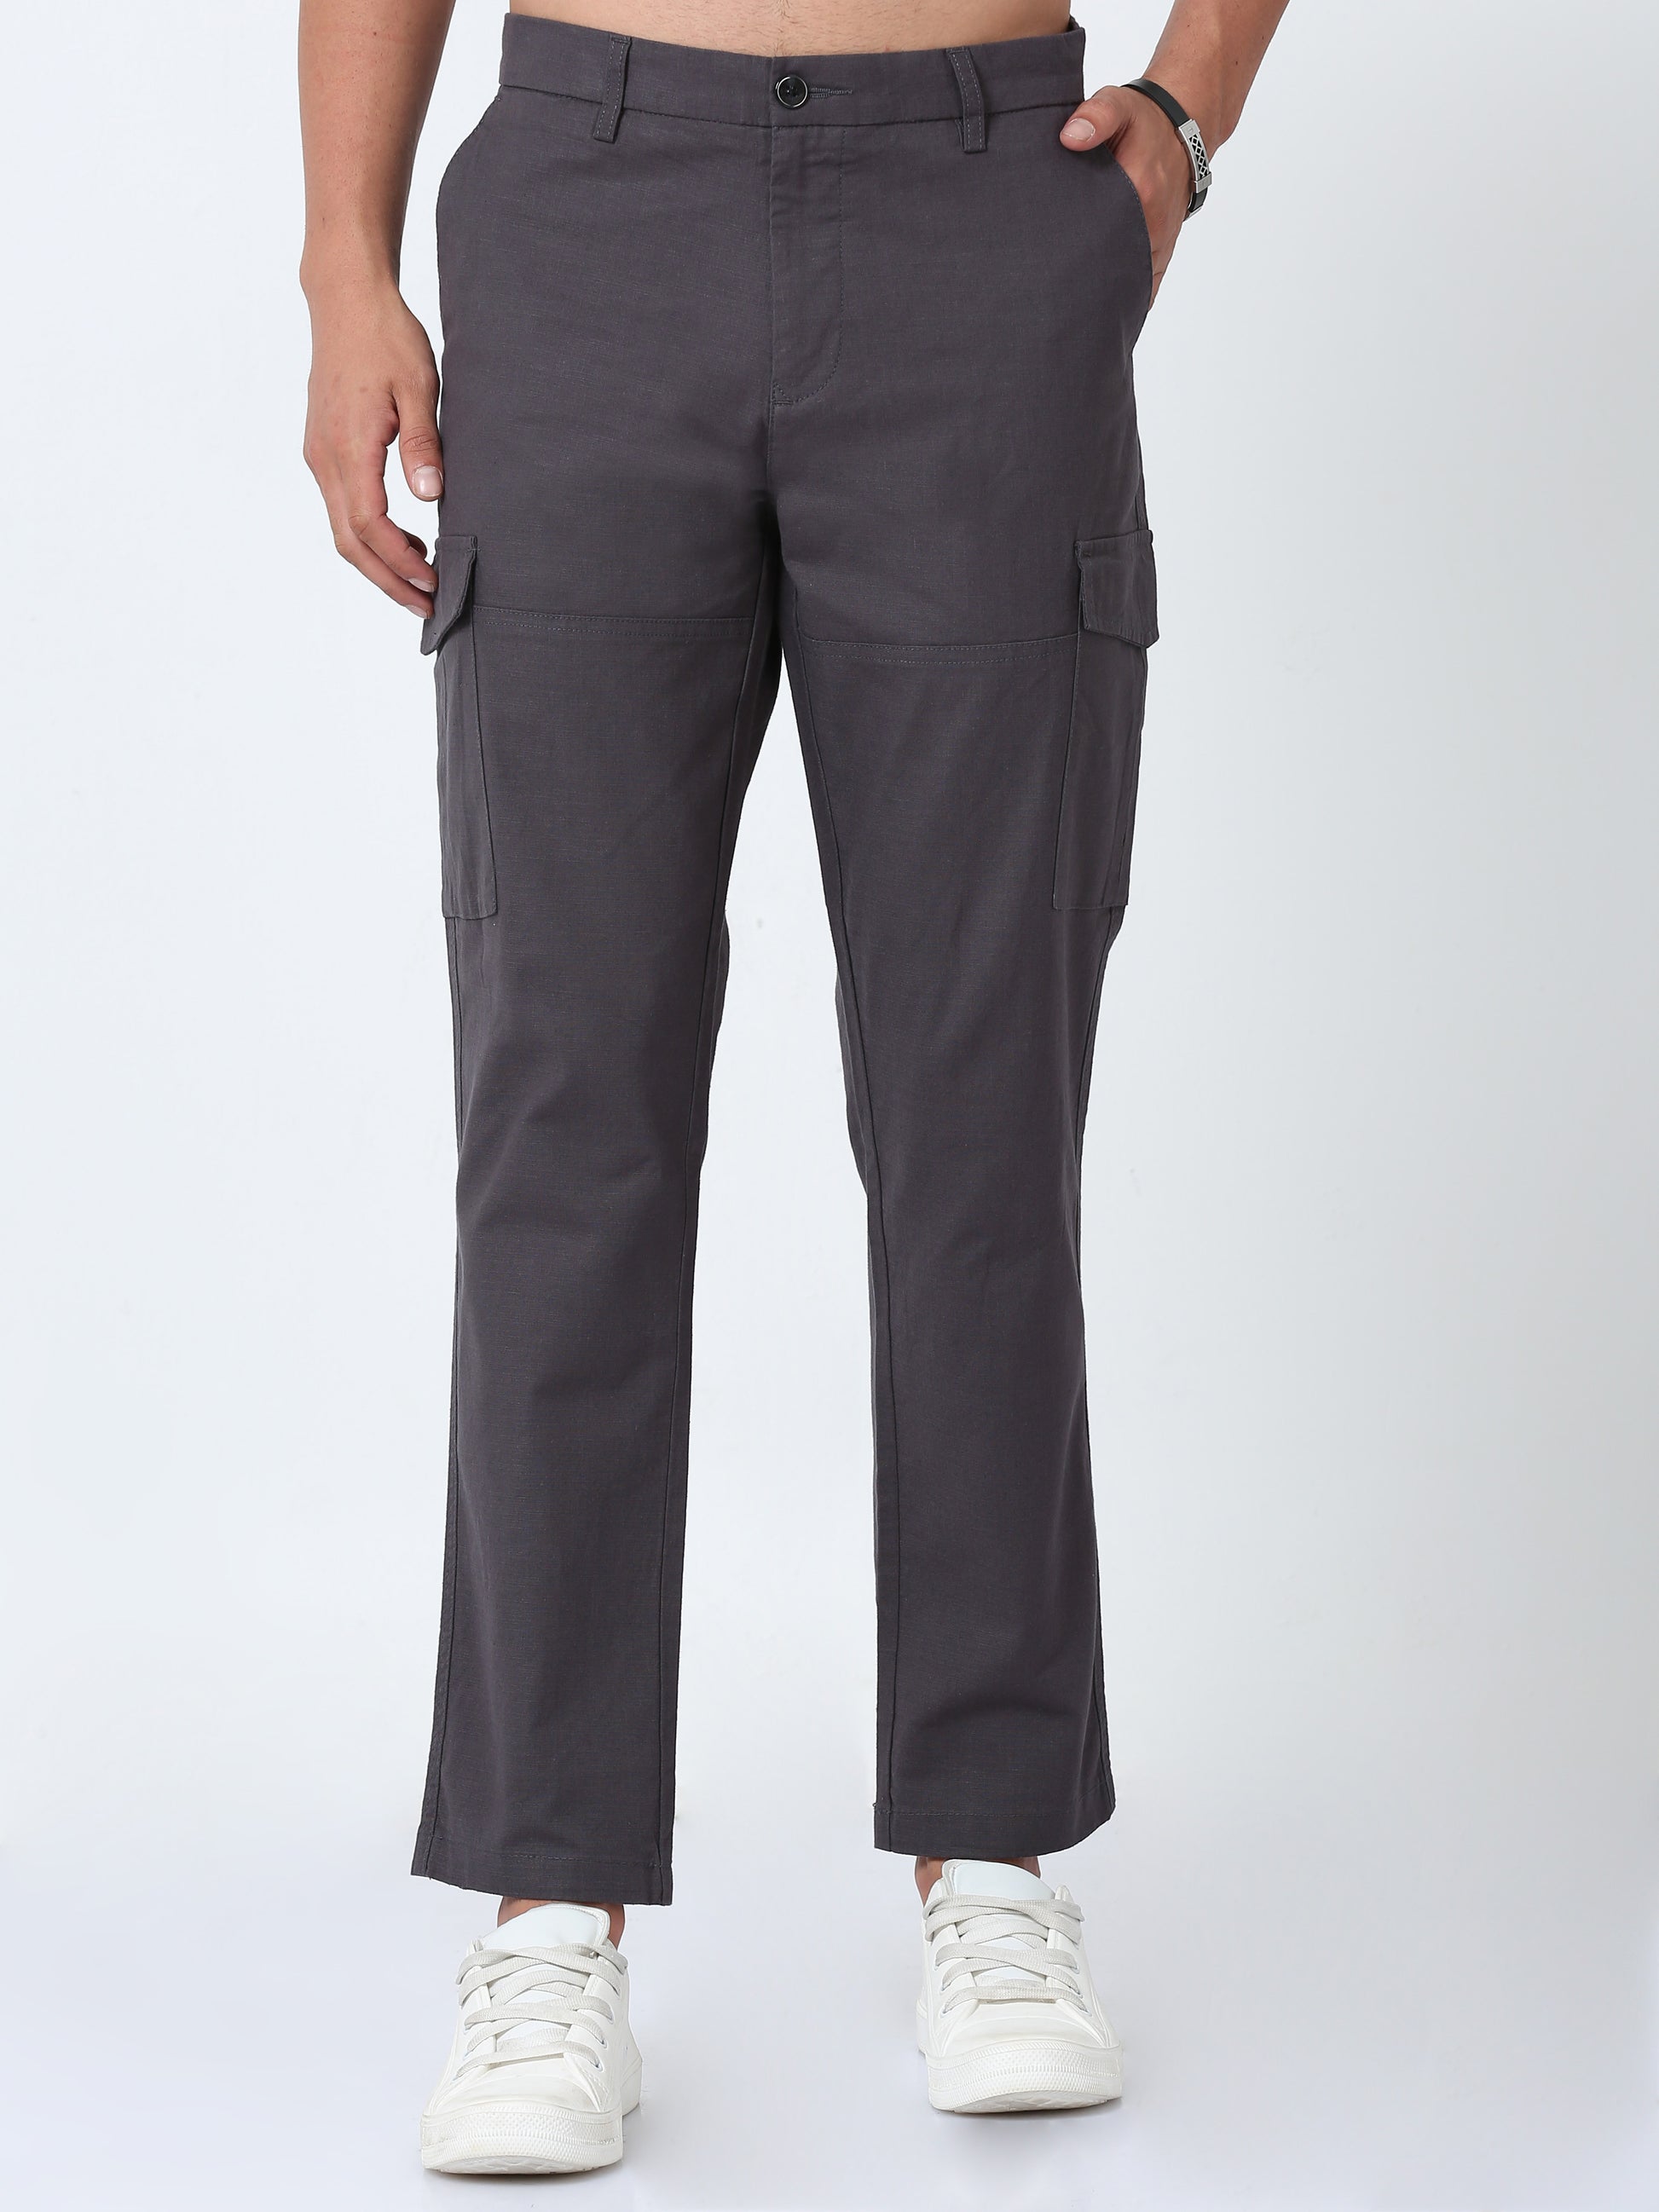 Men Lazy linen Cargo Pants-Grey